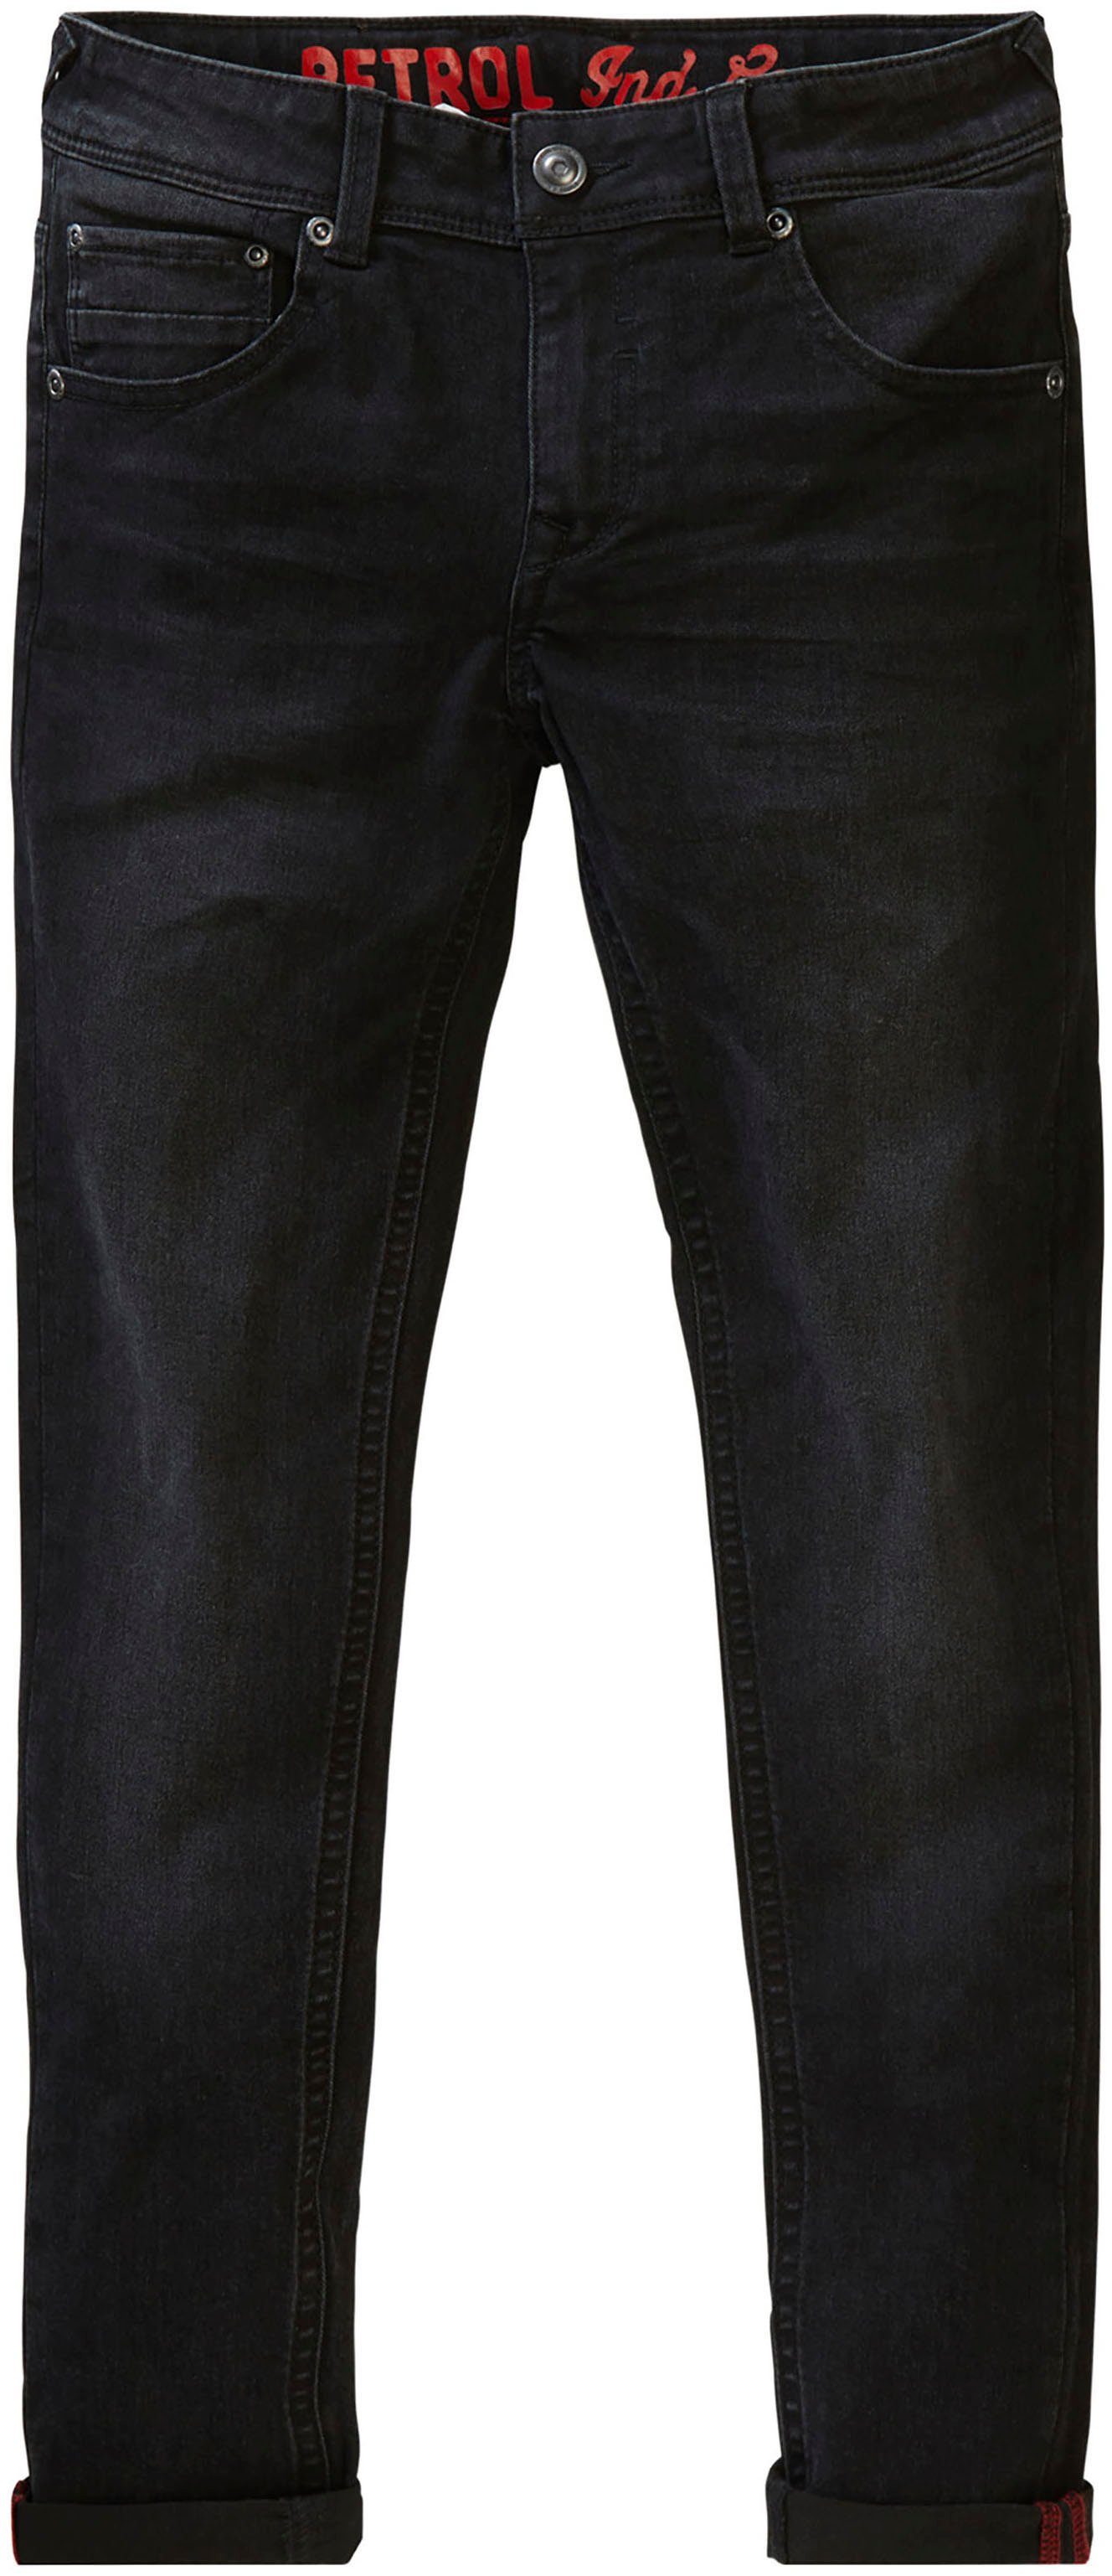 Schwarze Jungen Jeans online kaufen | OTTO